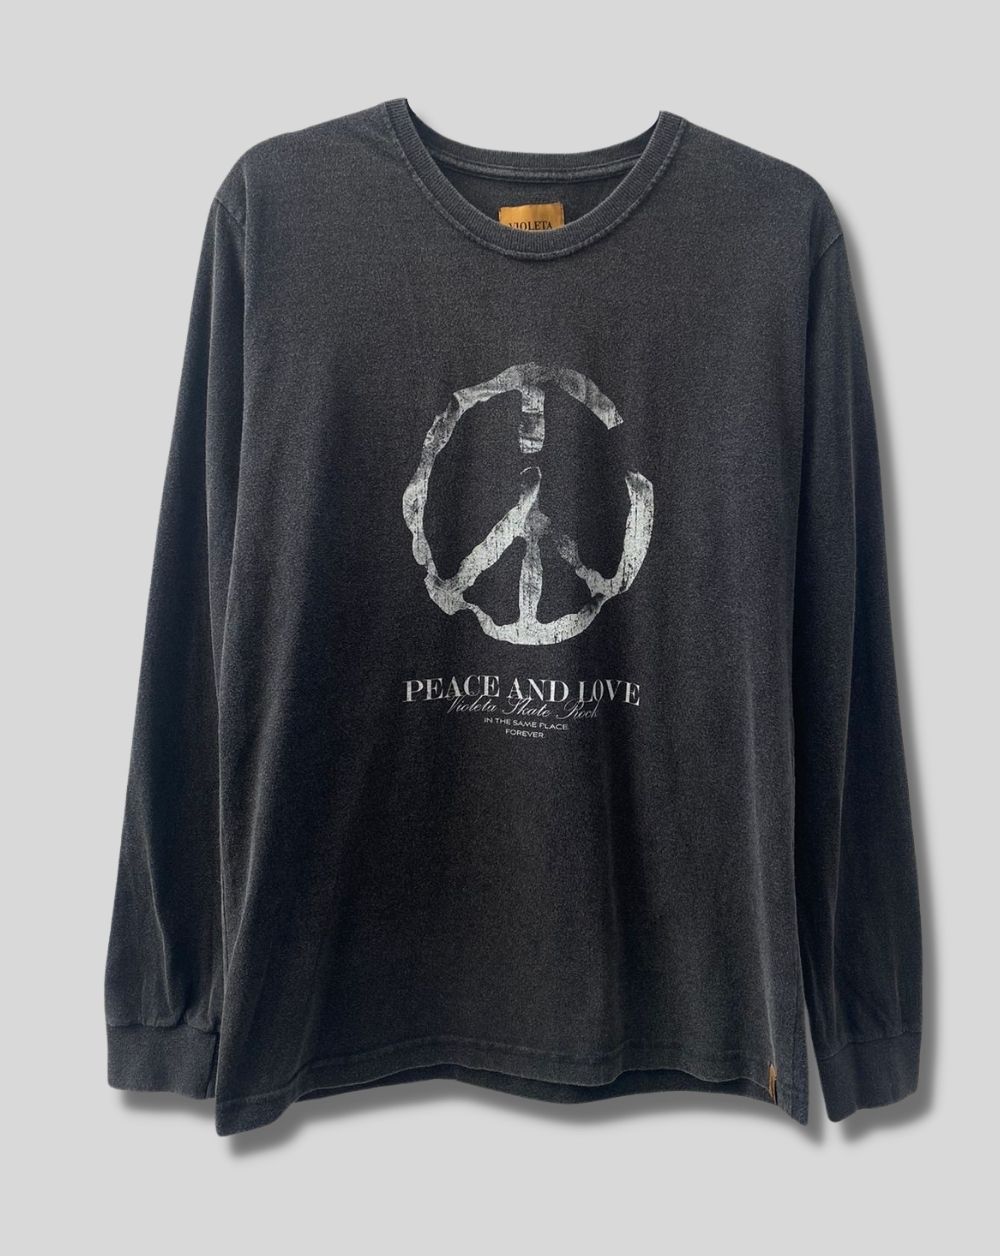 Camiseta Manga Longa Rock and Peace